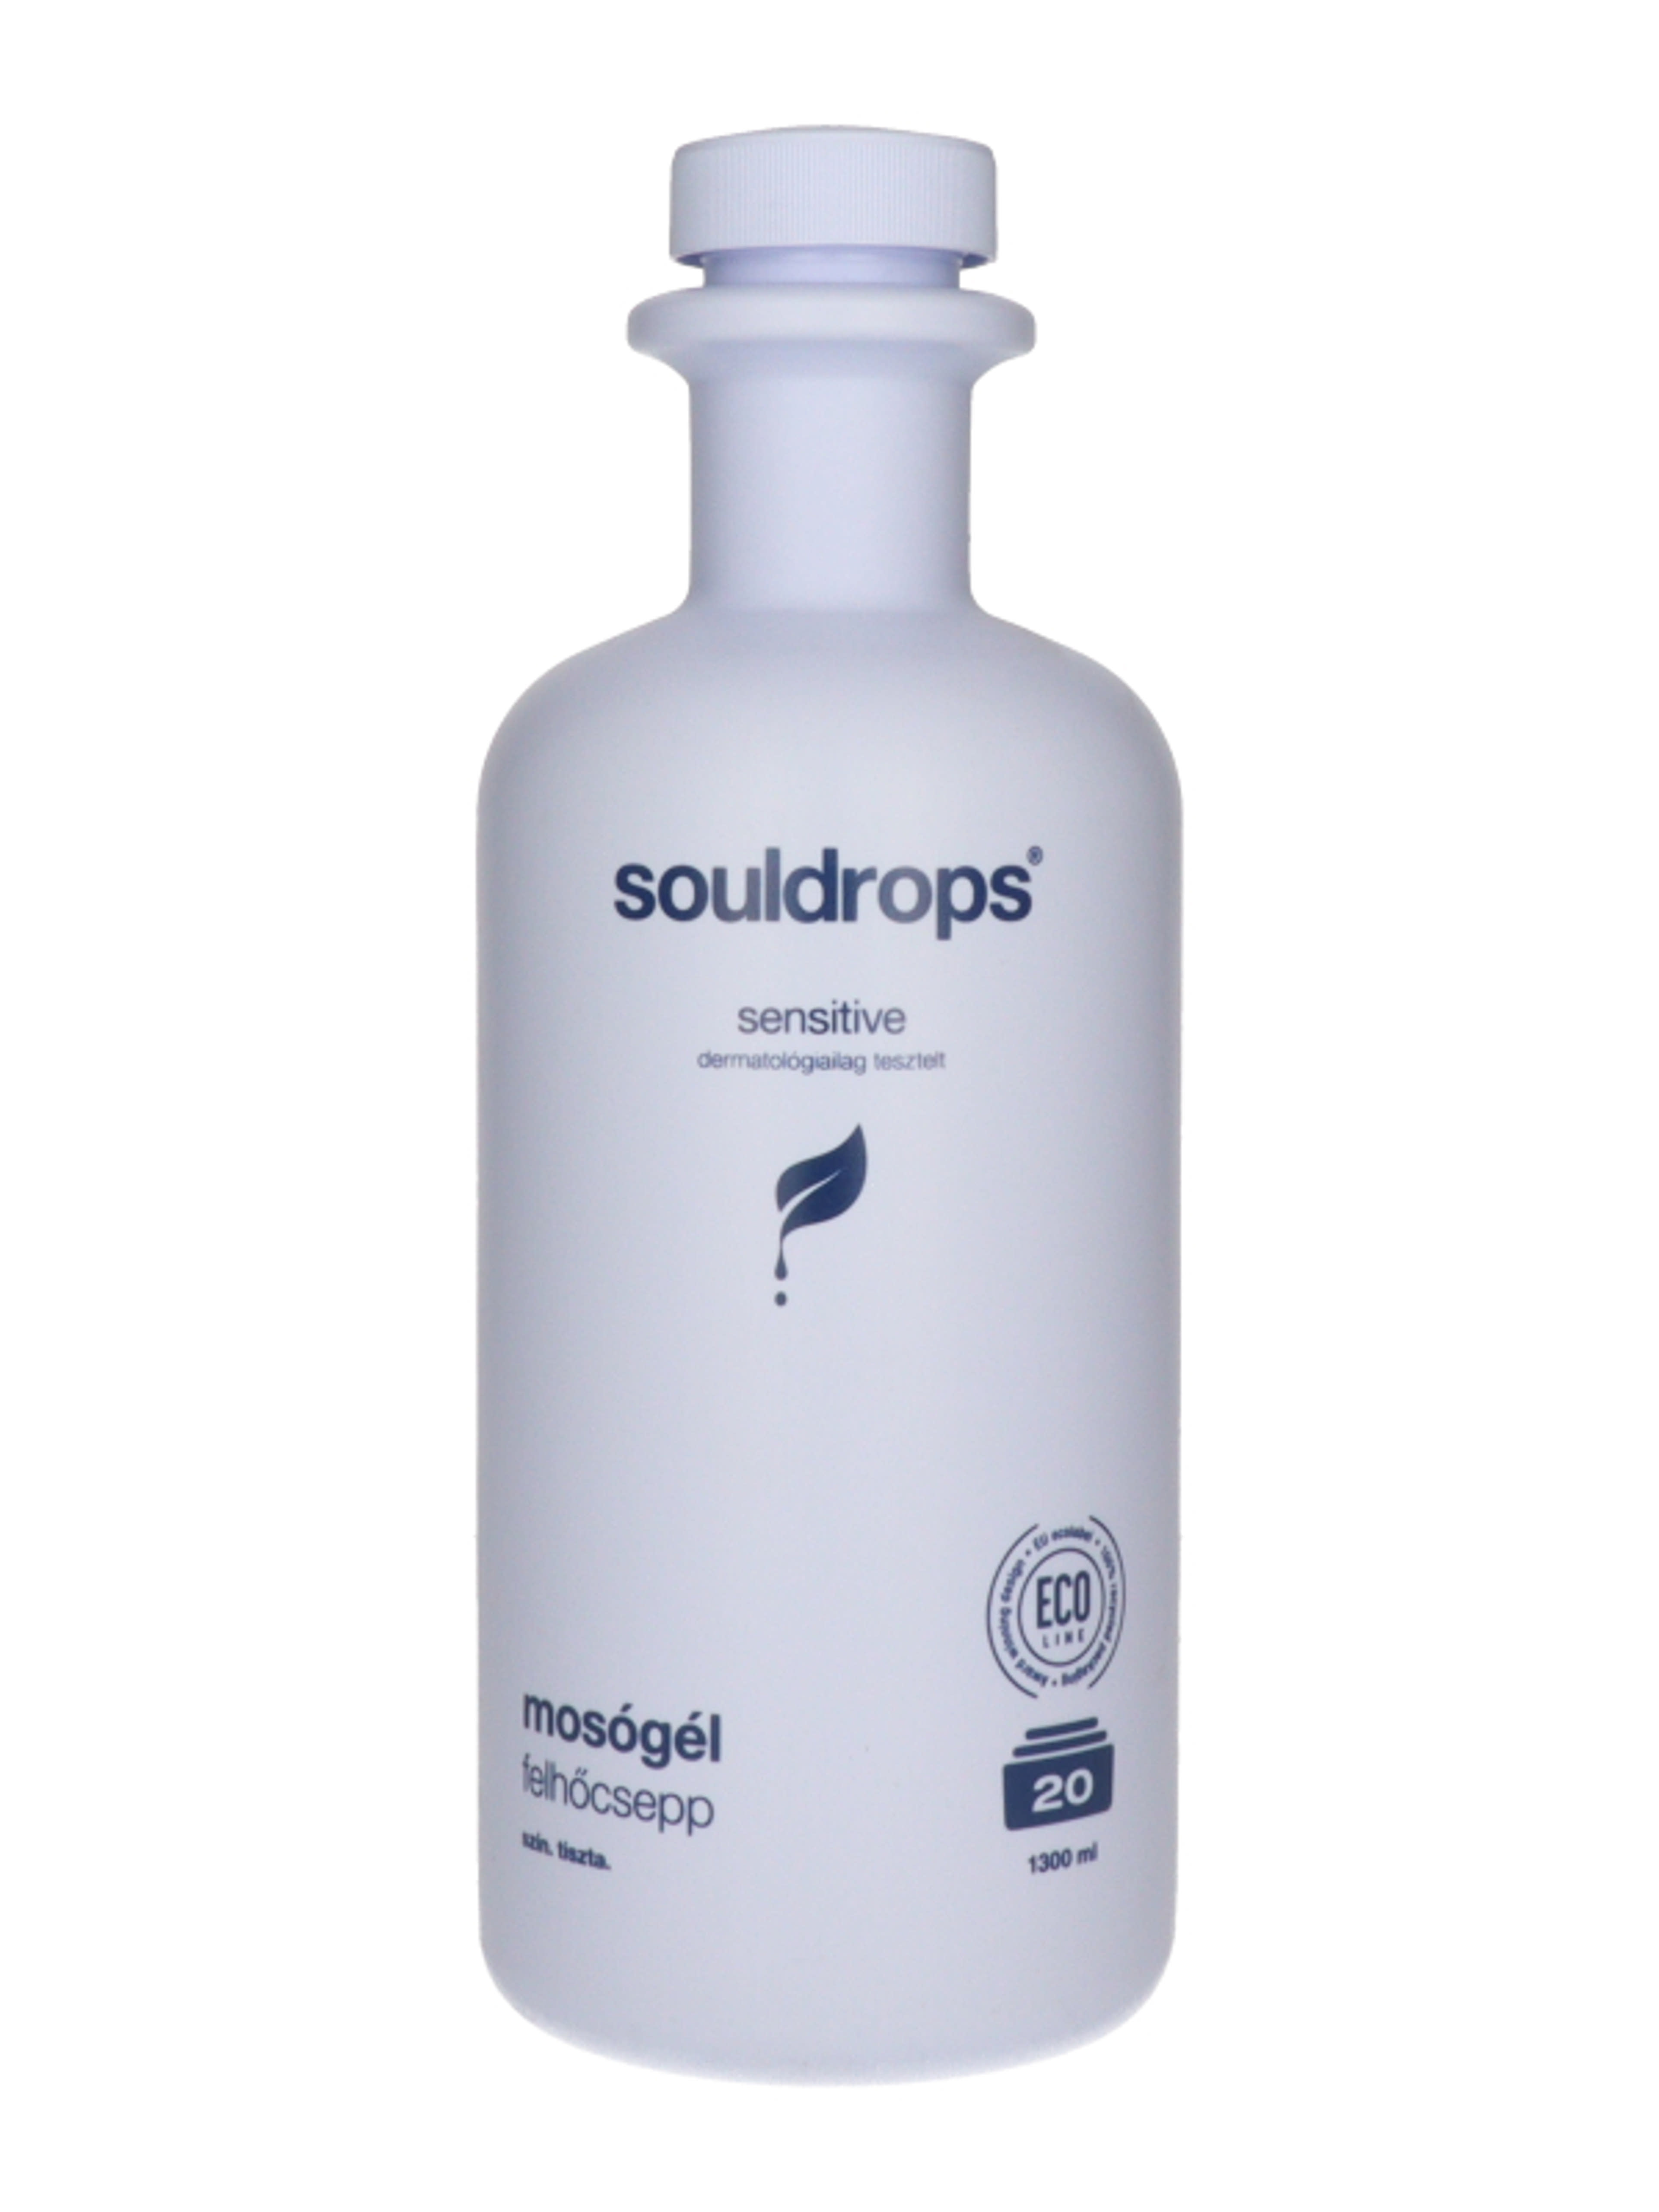 Souldrops Felhőcsepp szenzitív mosógél 20 mosás - 1300 ml-2